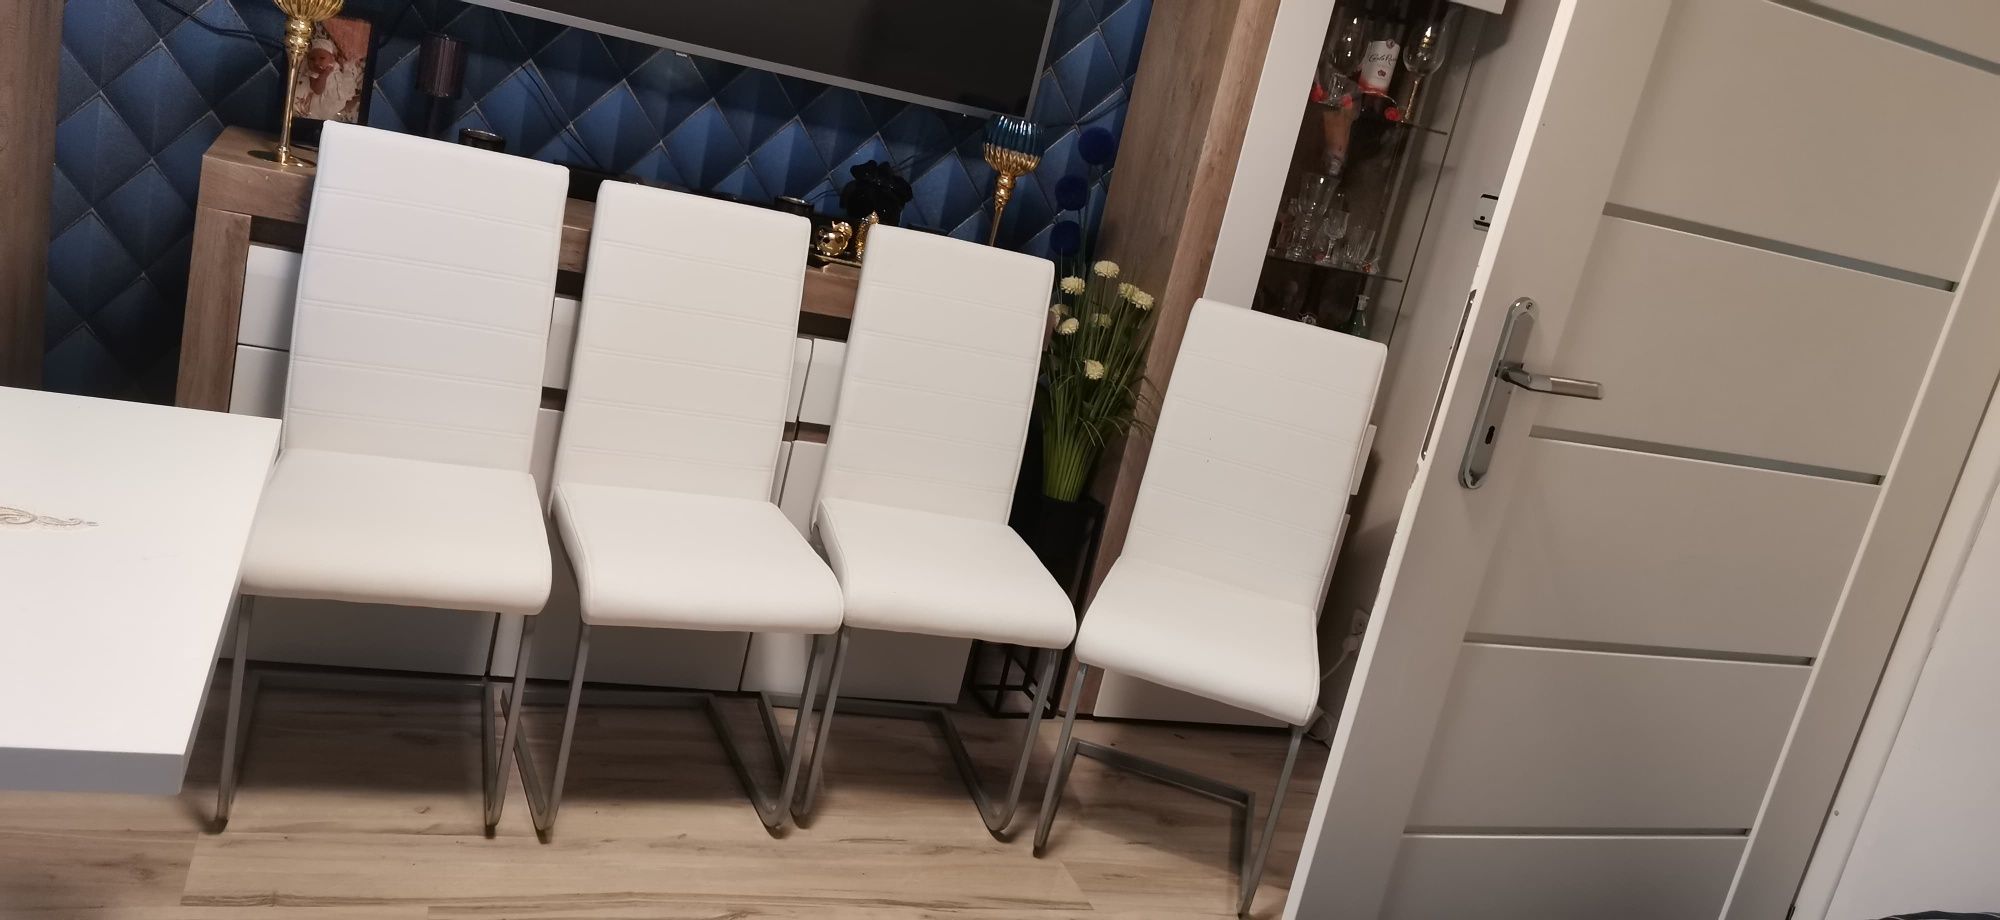 Sprzedam 4 krzesła